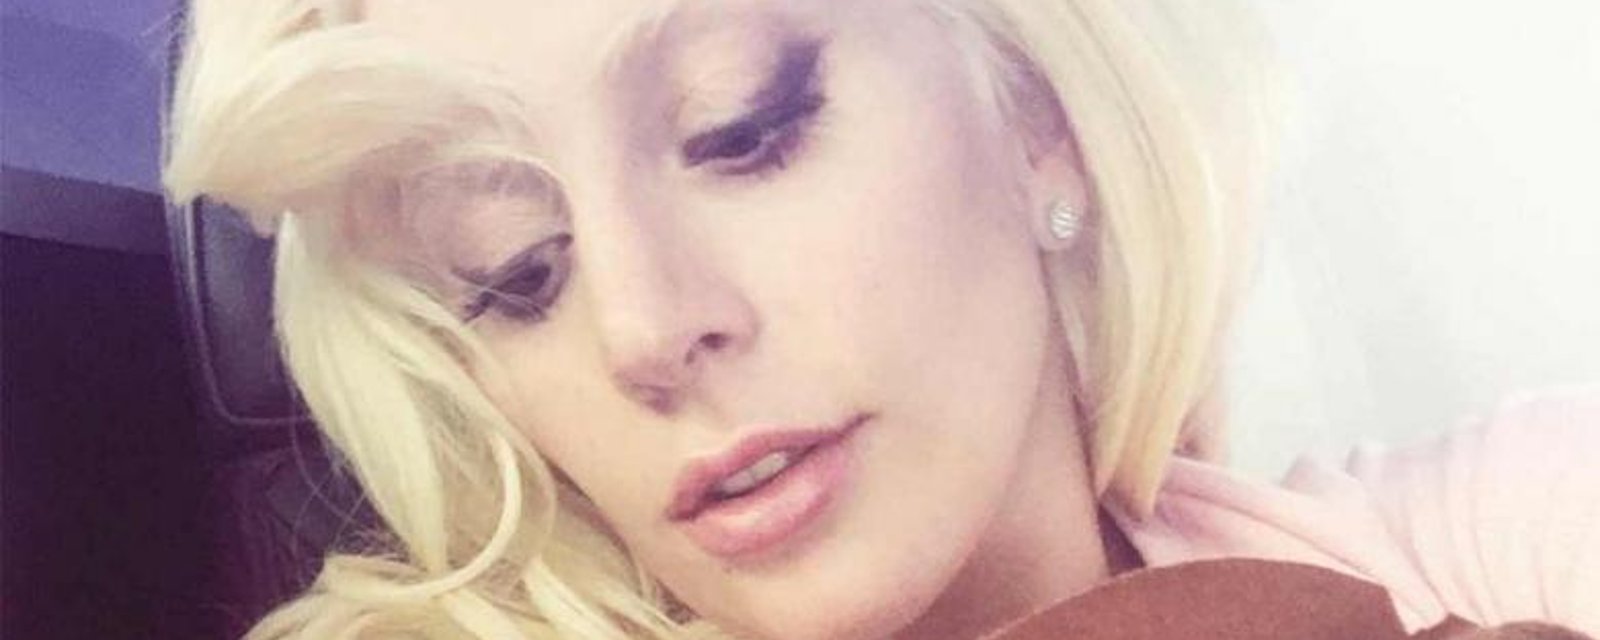 Lady Gaga et son amoureux posent complètement nus pour un célèbre magazine!